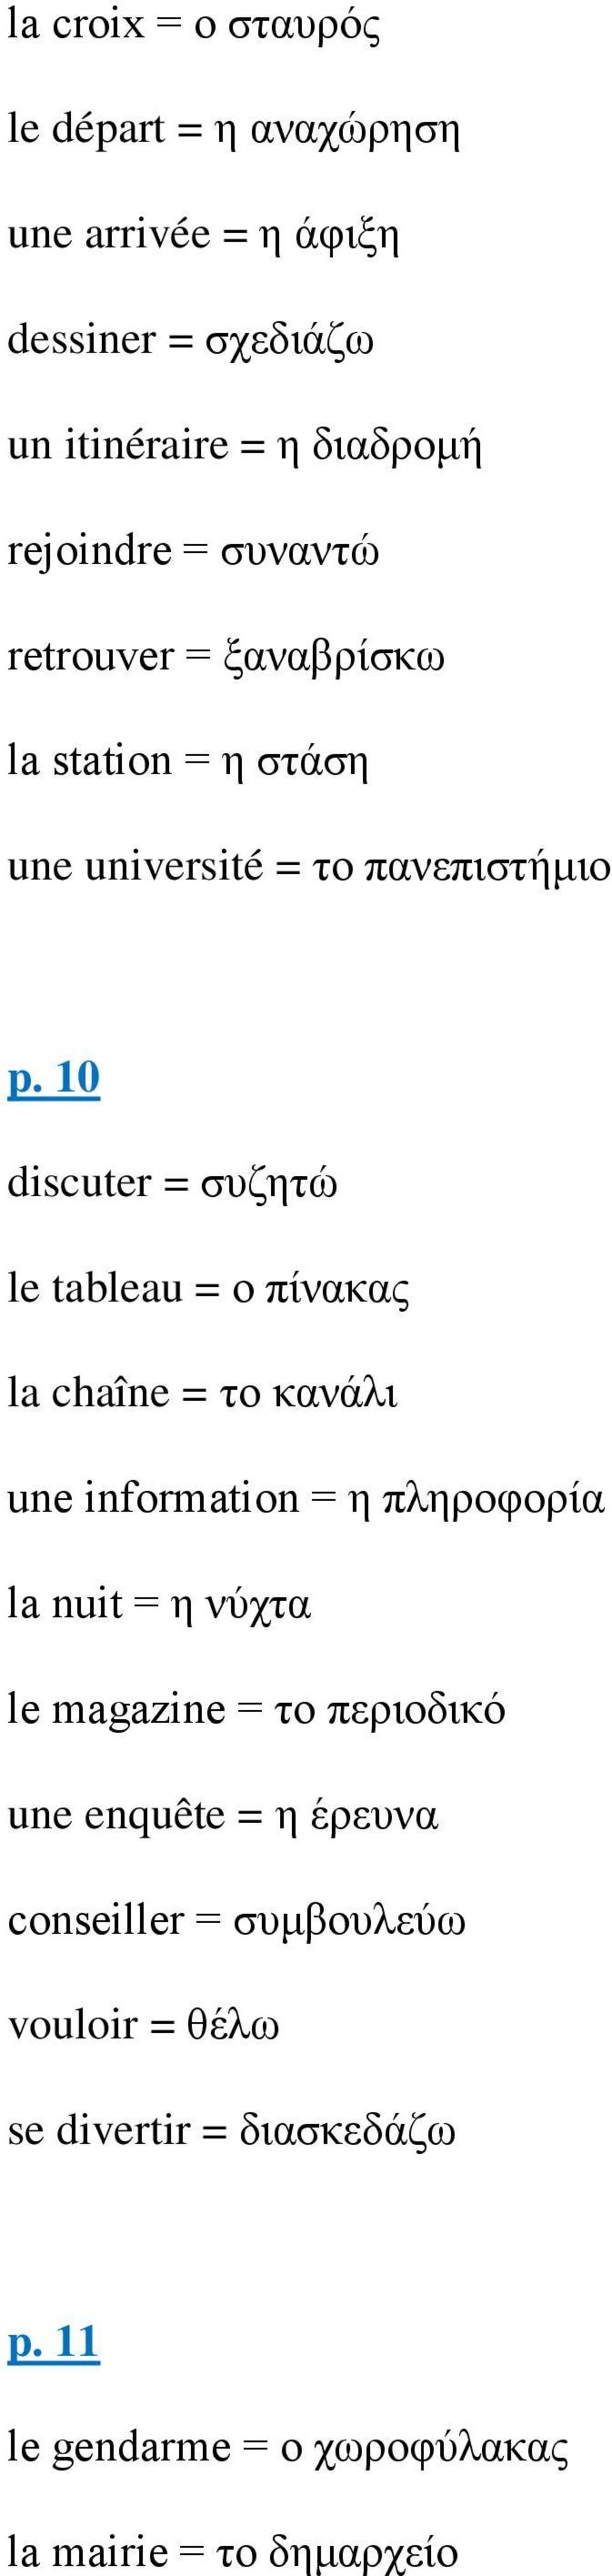 10 discuter = συζητώ le tableau = ο πίνακας la chaîne = το κανάλι une information = η πληροφορία la nuit = η νύχτα le